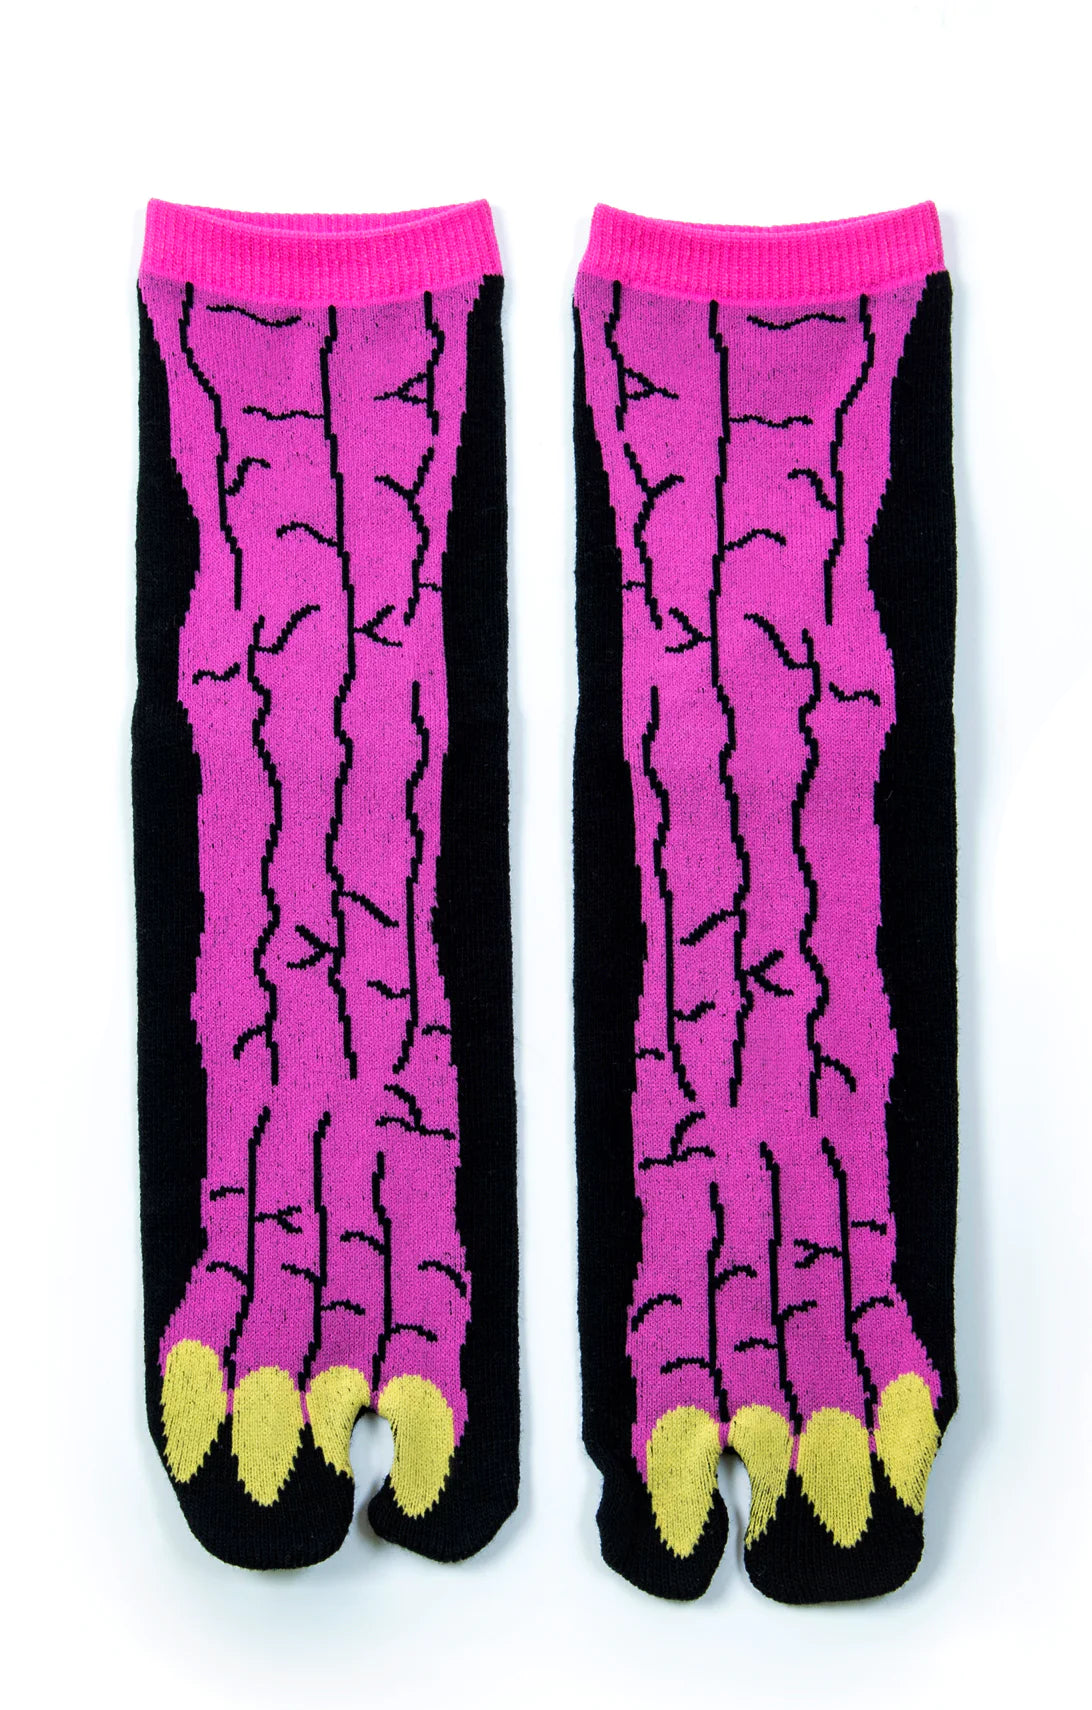 Godzilla Tabi Toe Socks l Made in Japan l Ninja socks – NARASOCKS